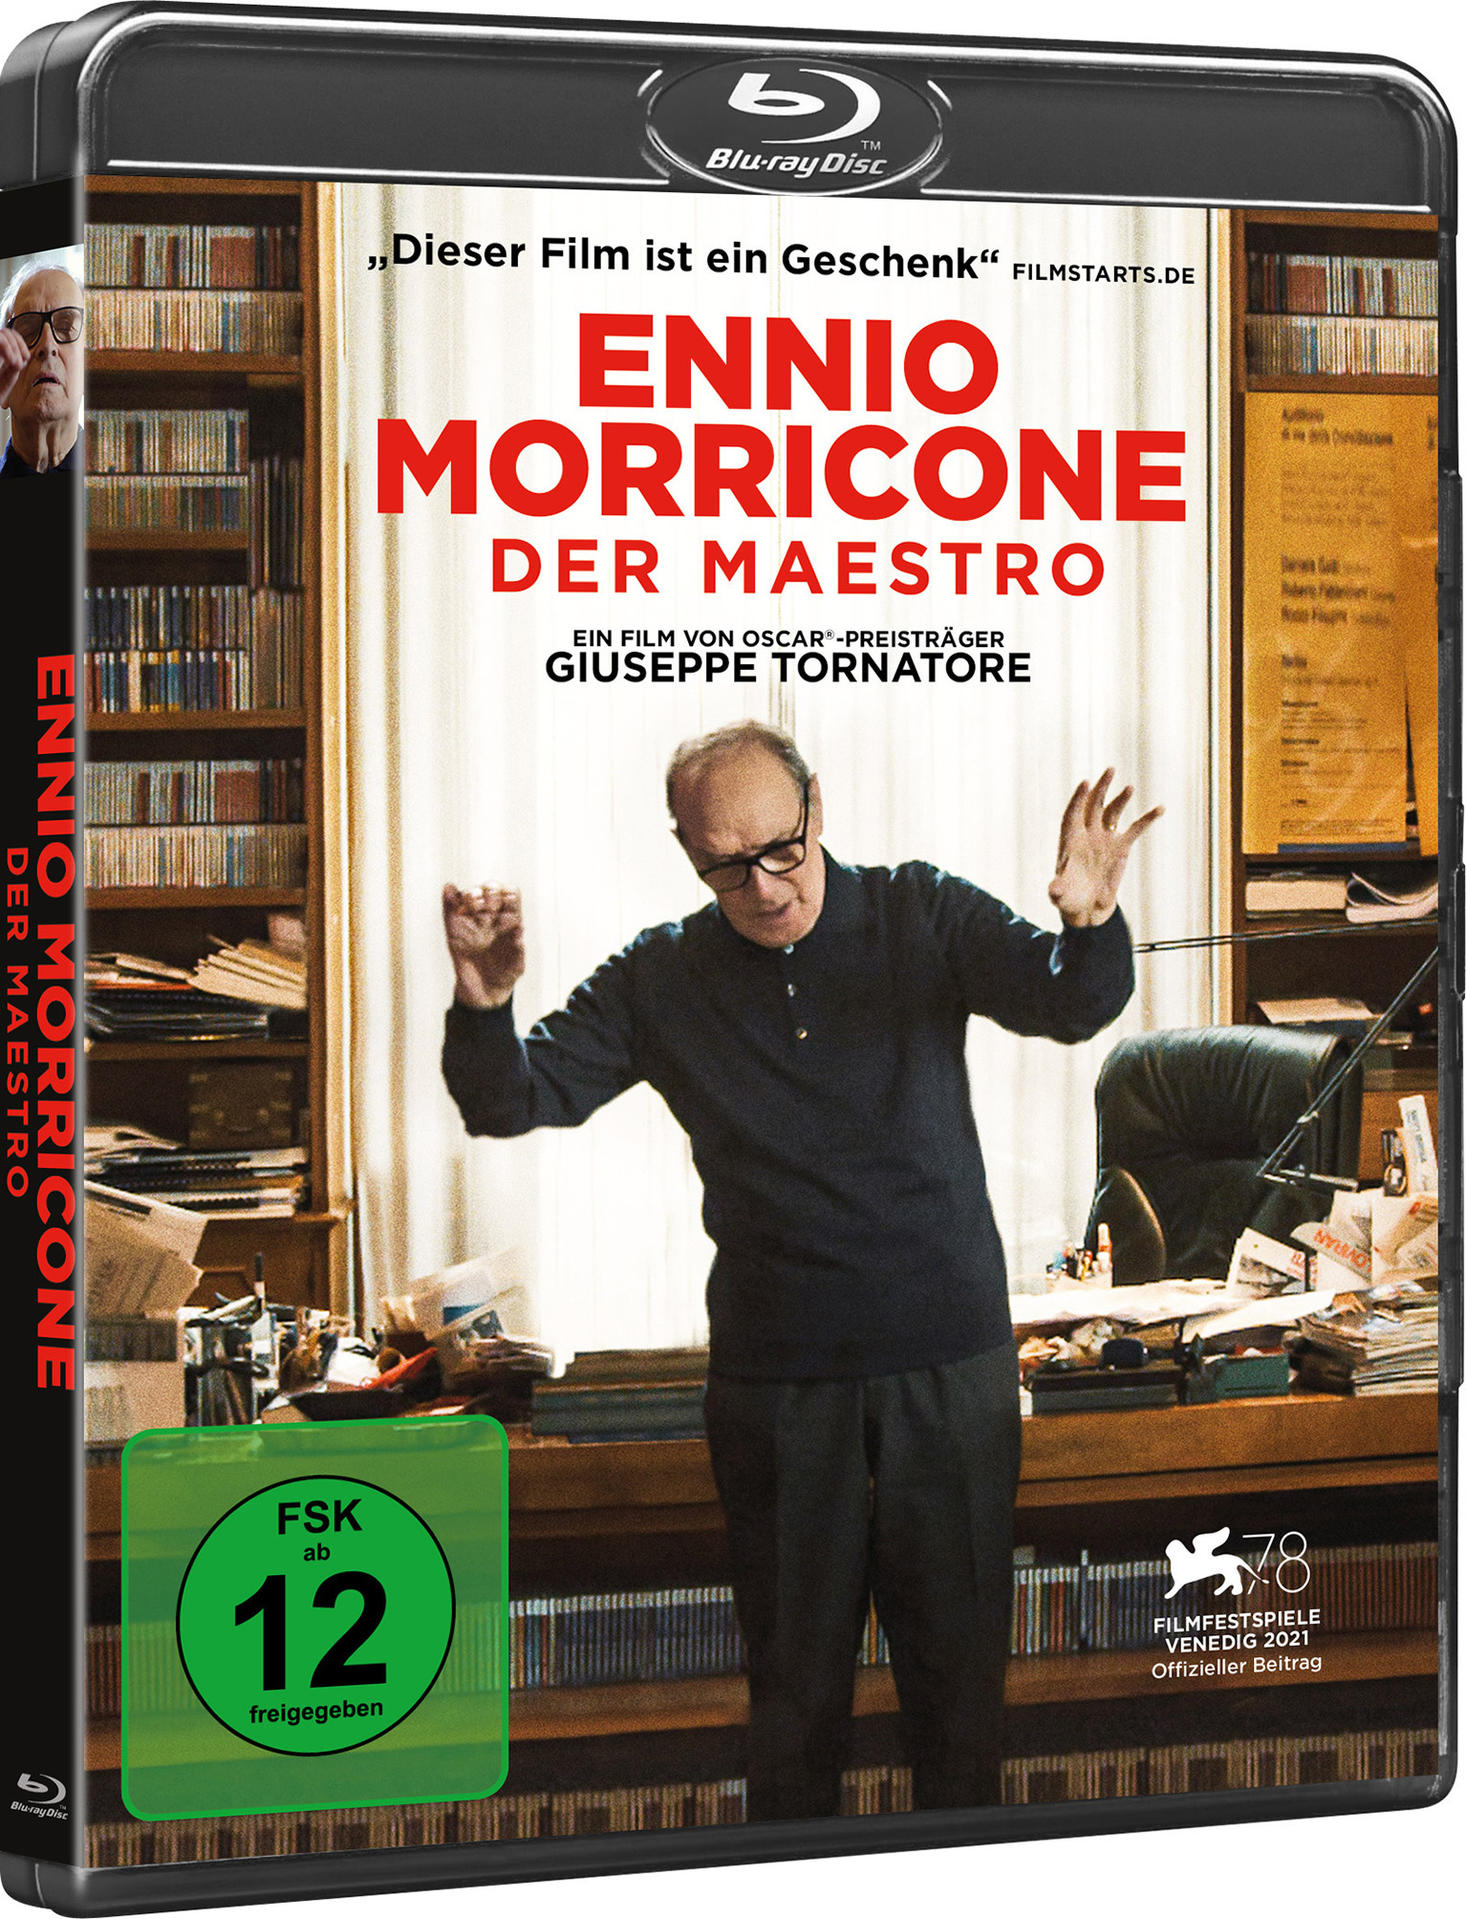 Blu-ray - Maestro Der Morricone Ennio